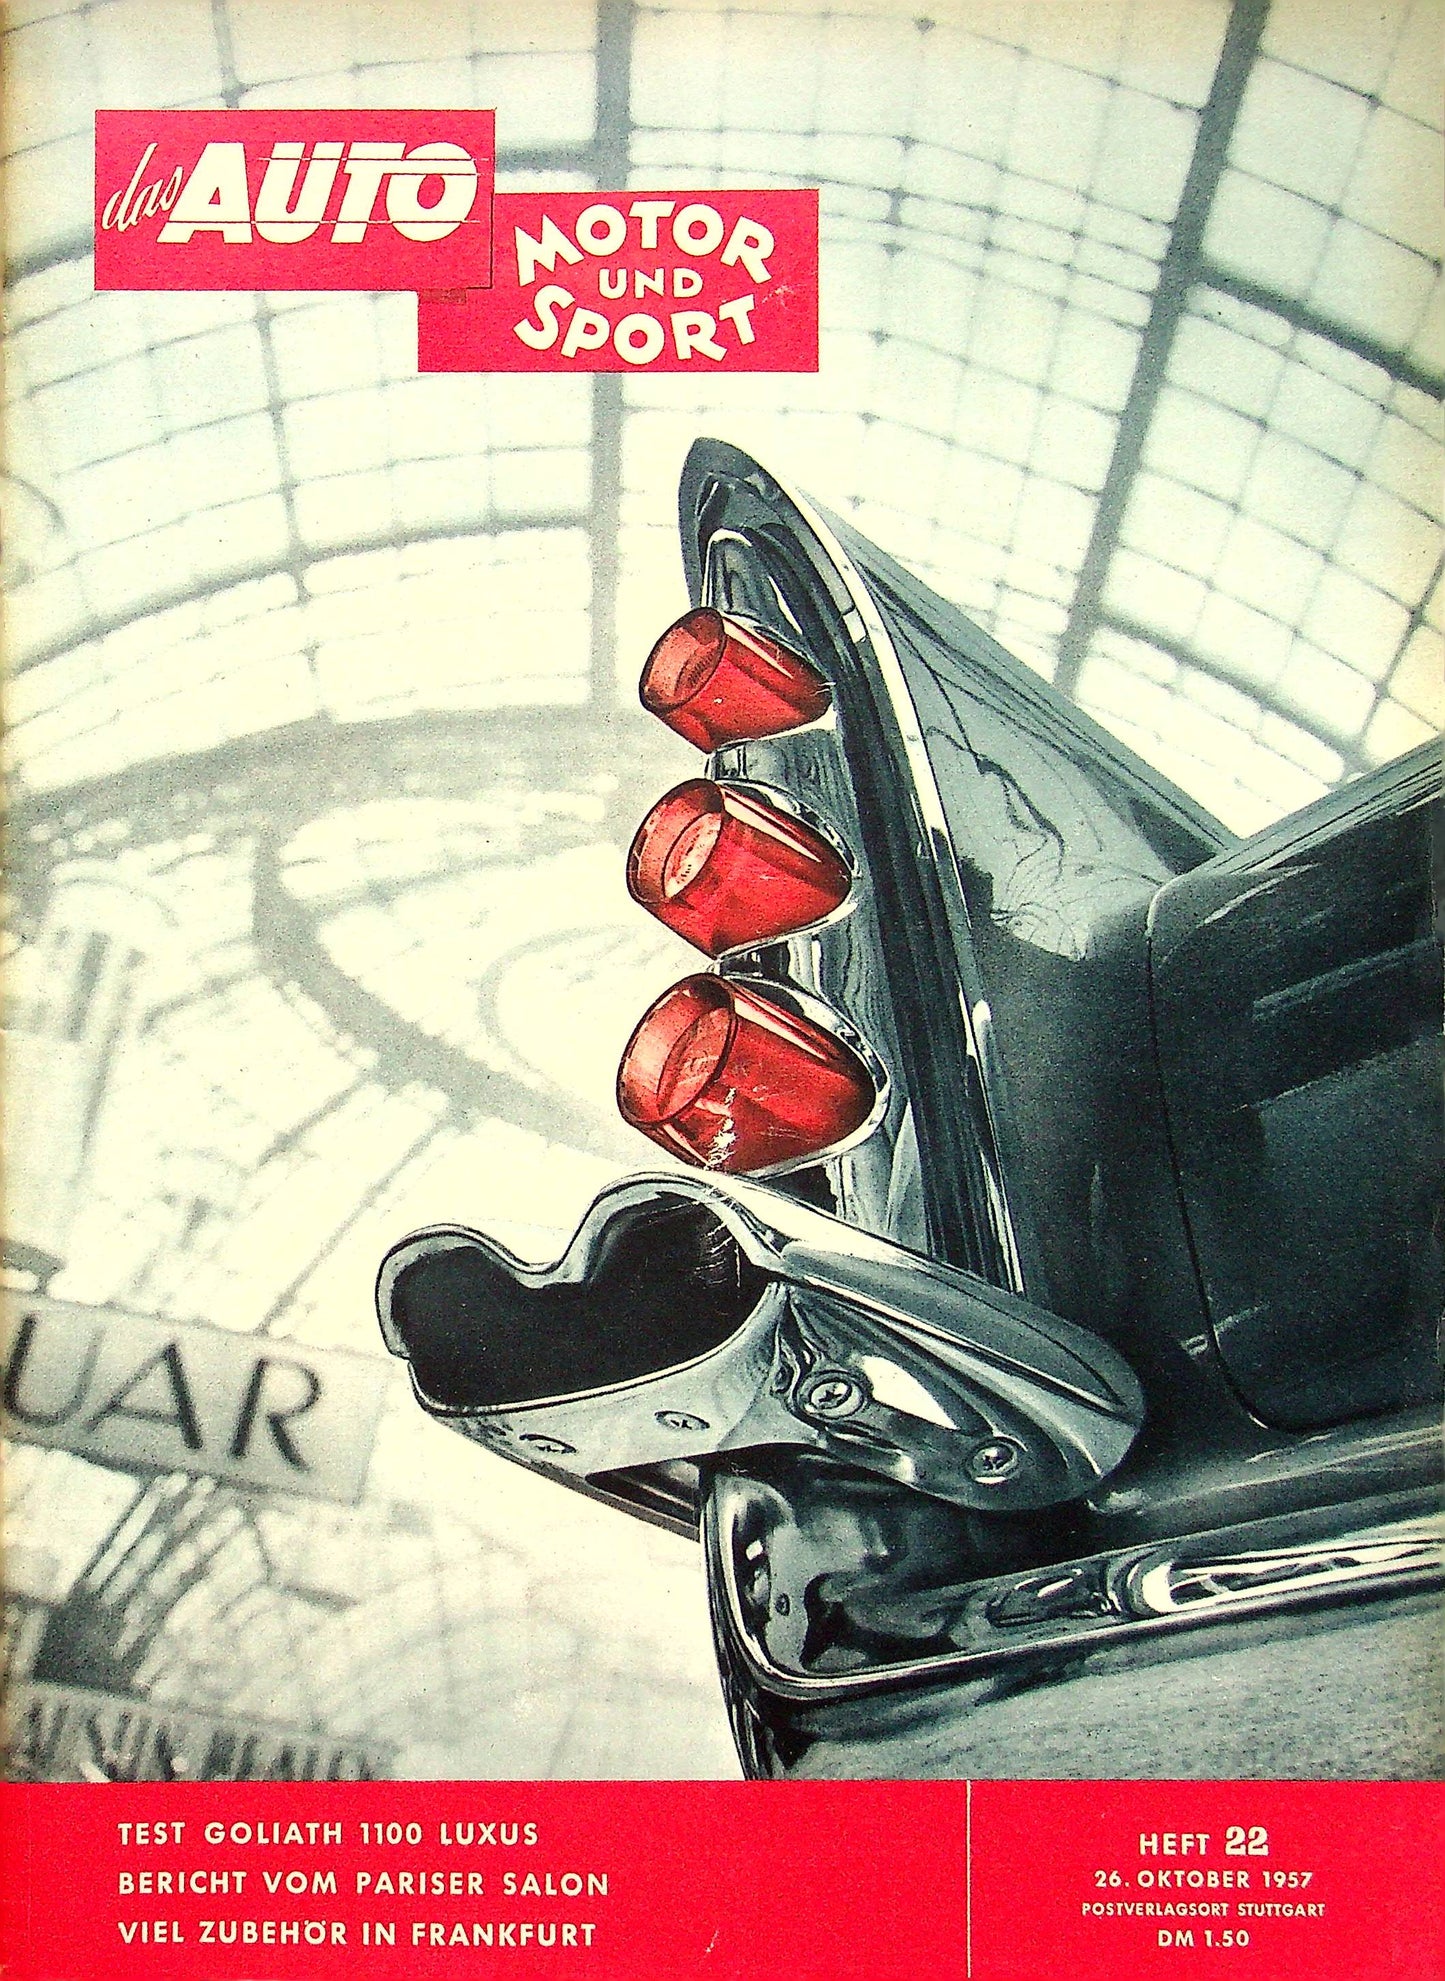 Auto Motor und Sport 22/1957